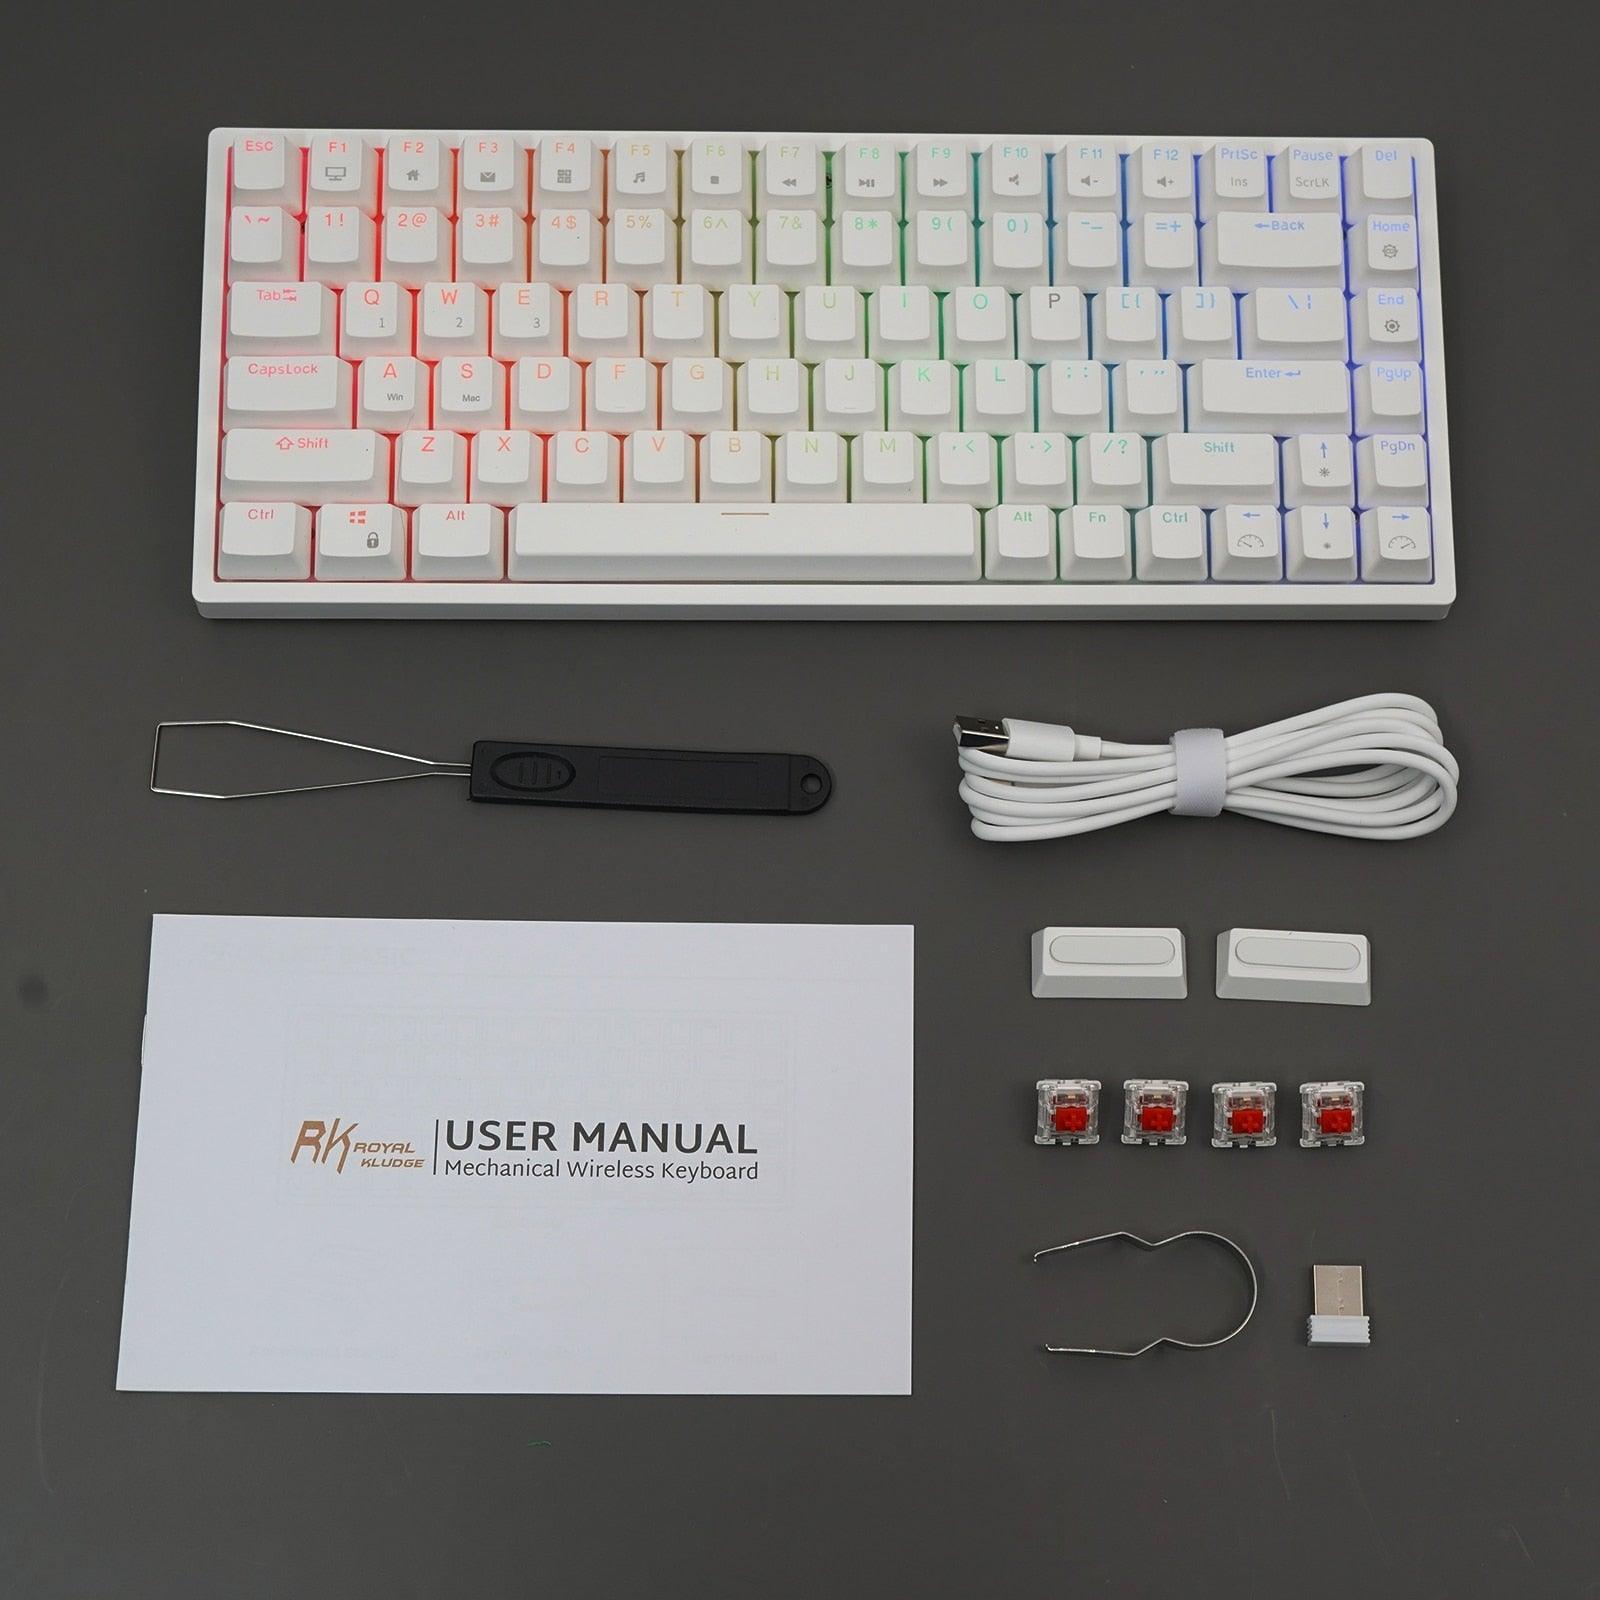  Firework Keyboard sold by Fleurlovin, Free Shipping Worldwide